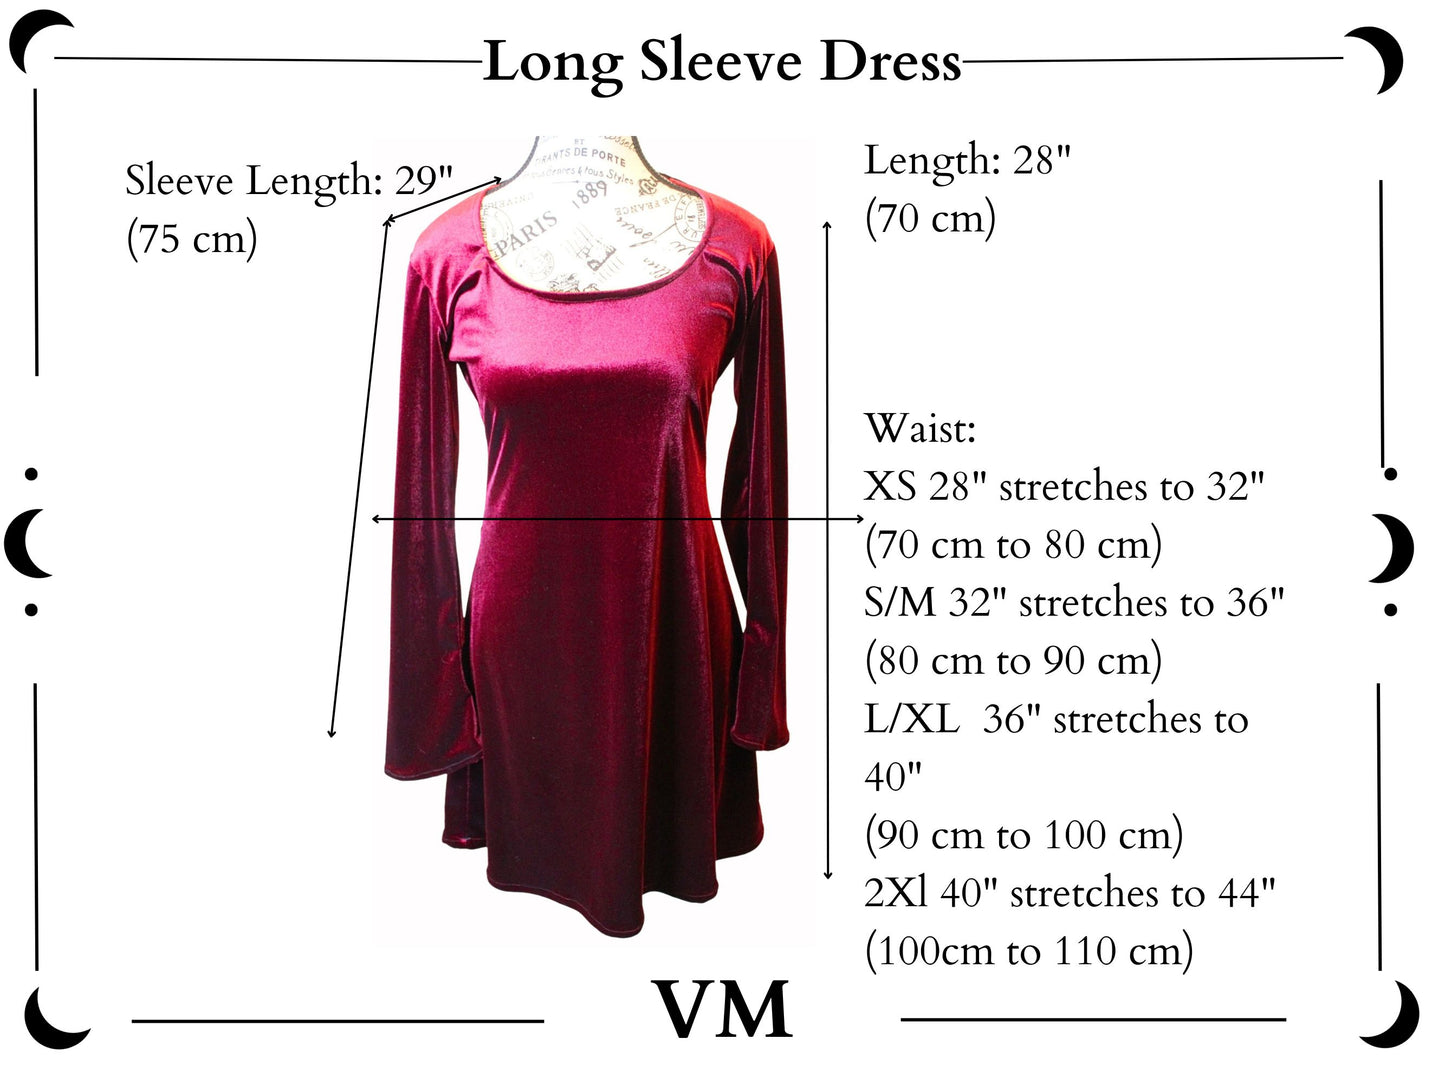 The VM Short Velvet Vamp Dress